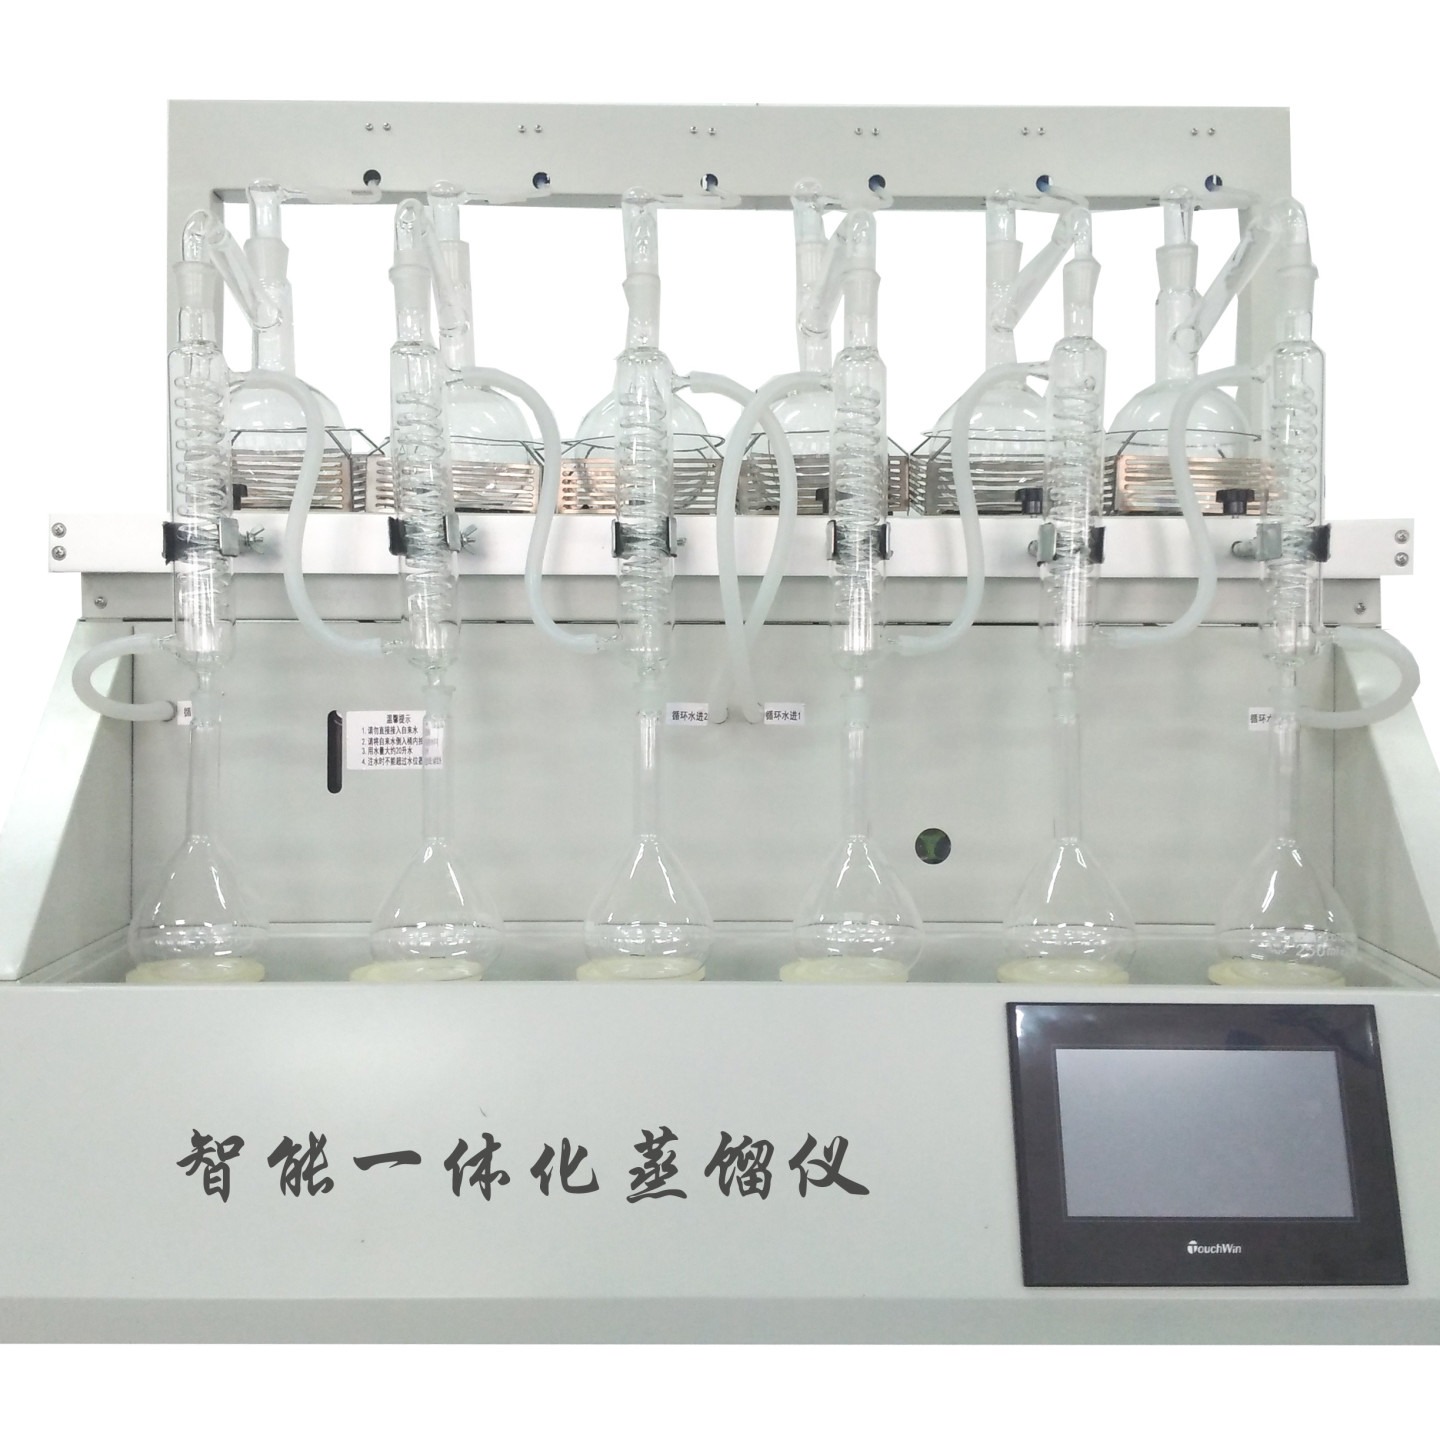 一体化万用蒸馏仪 CYZL-6 经济型蒸馏装置 智能一体化万用蒸馏仪